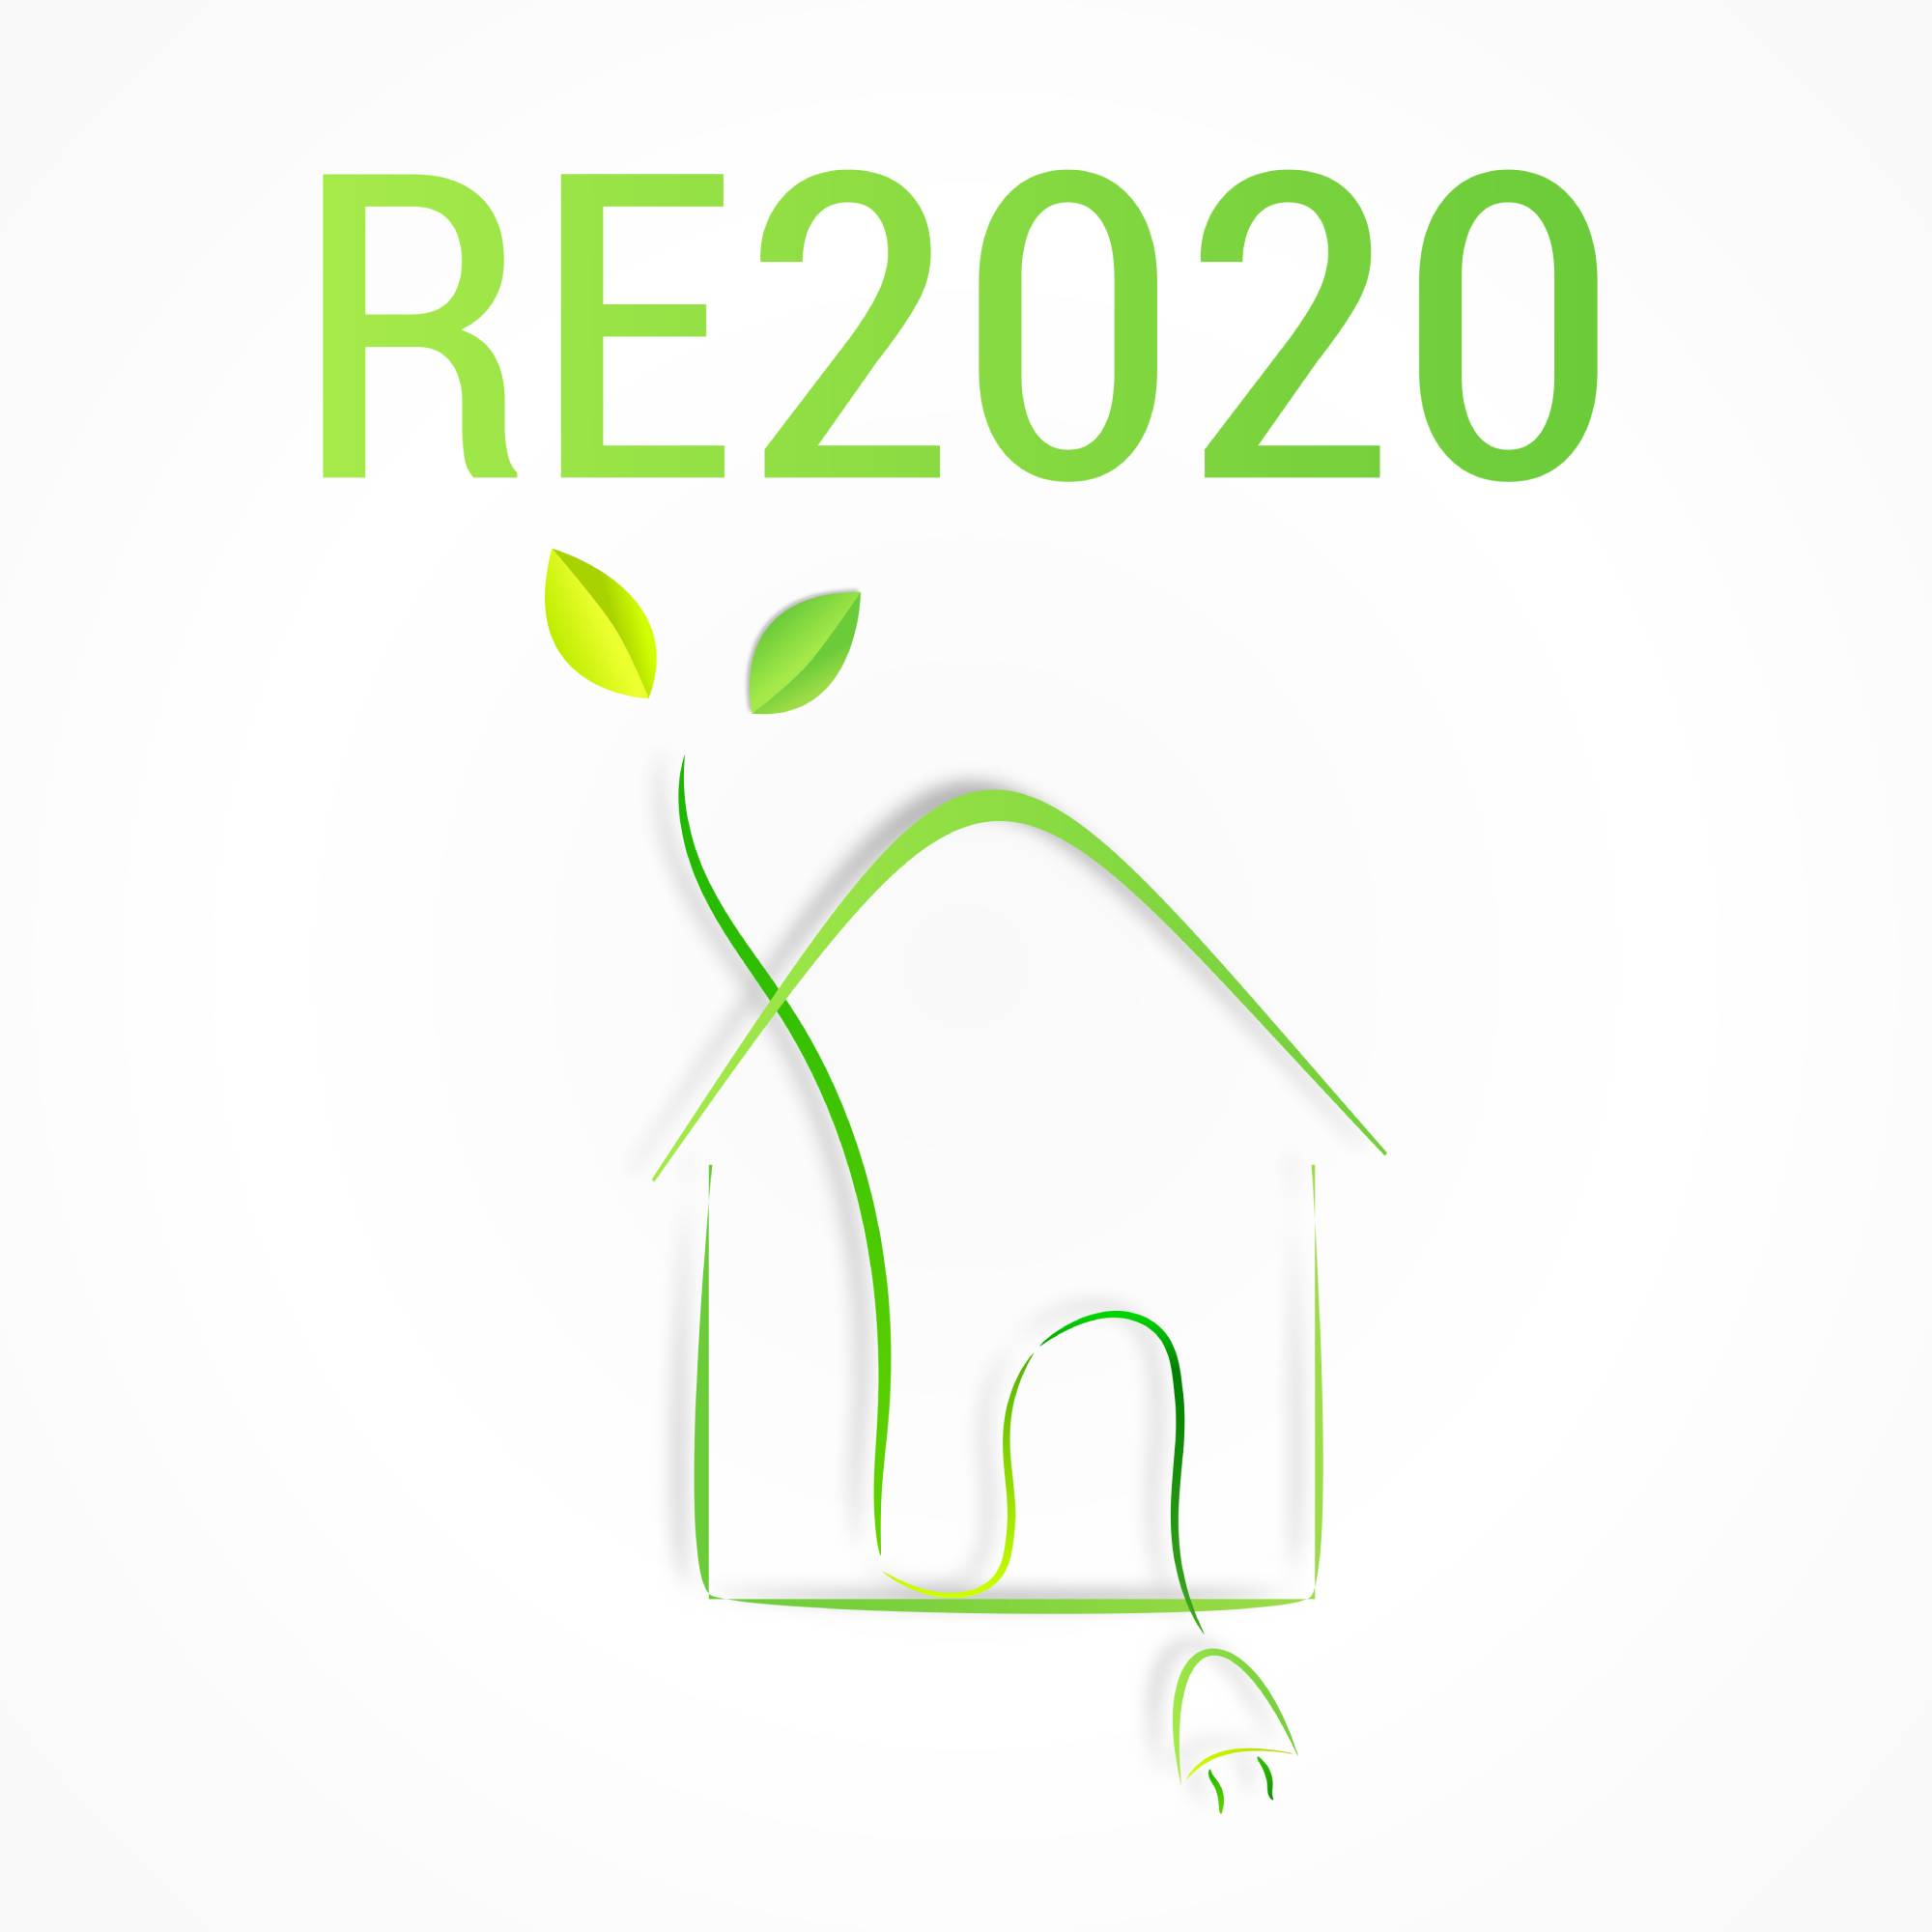 Mise en œuvre de la nouvelle réglementation RE2020 dès 2022